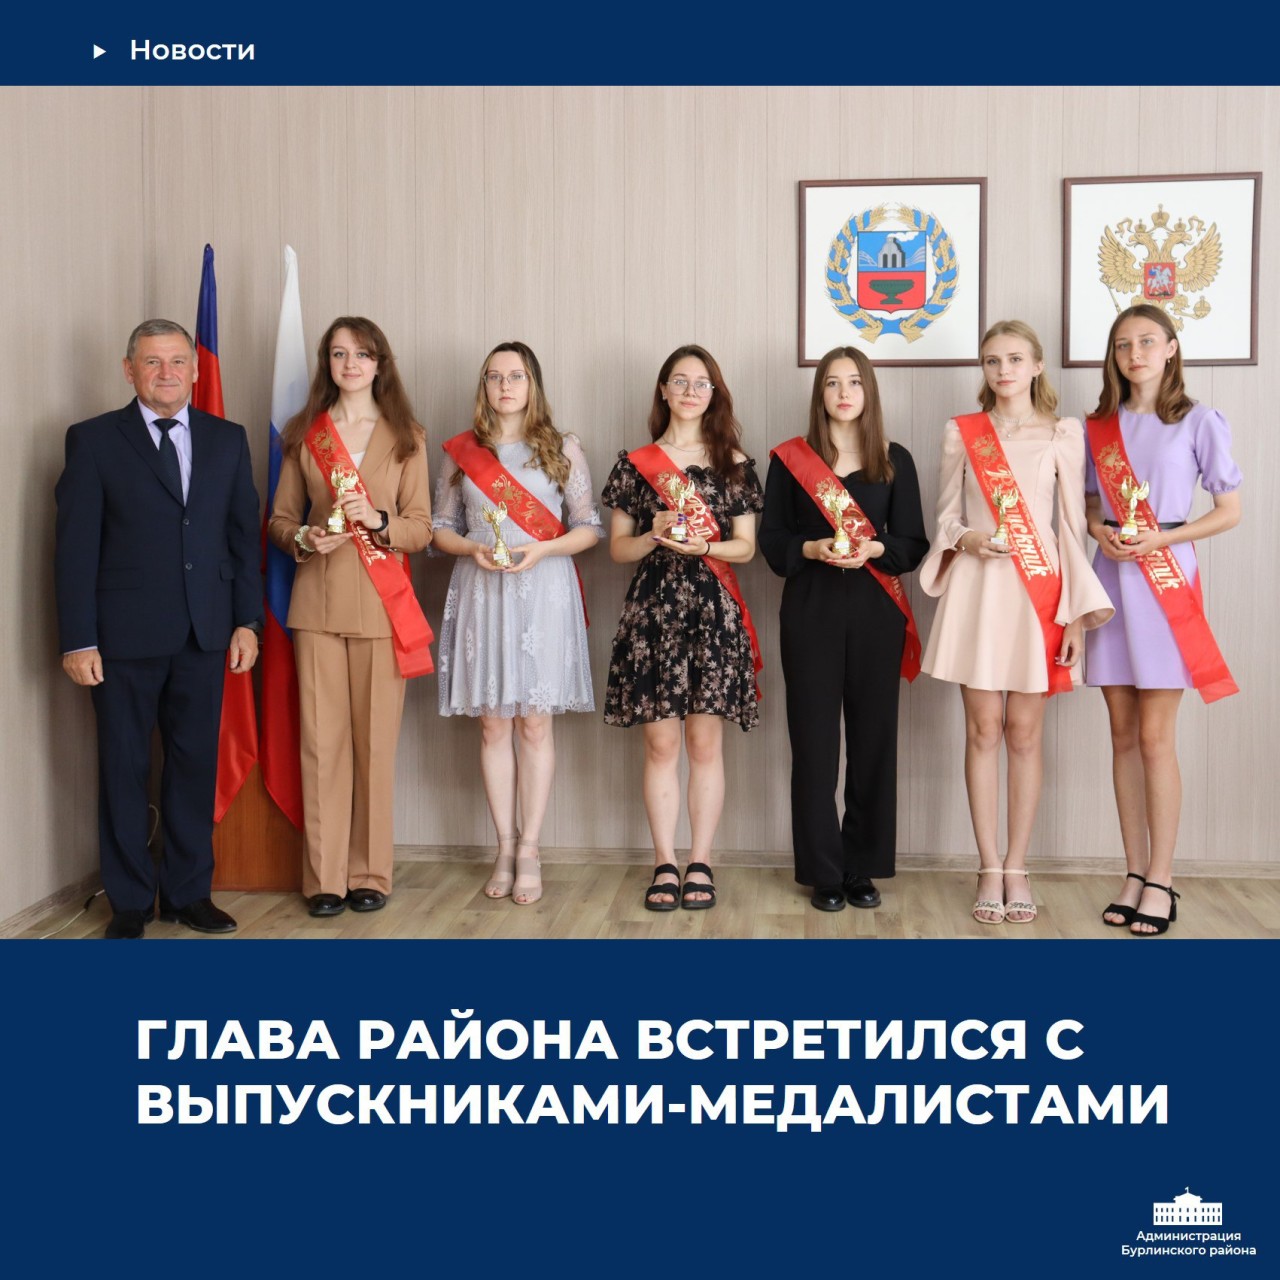 Глава Бурлинского района Сергей Давыденко 24 июня провел торжественный прием с выпускниками-медалистами